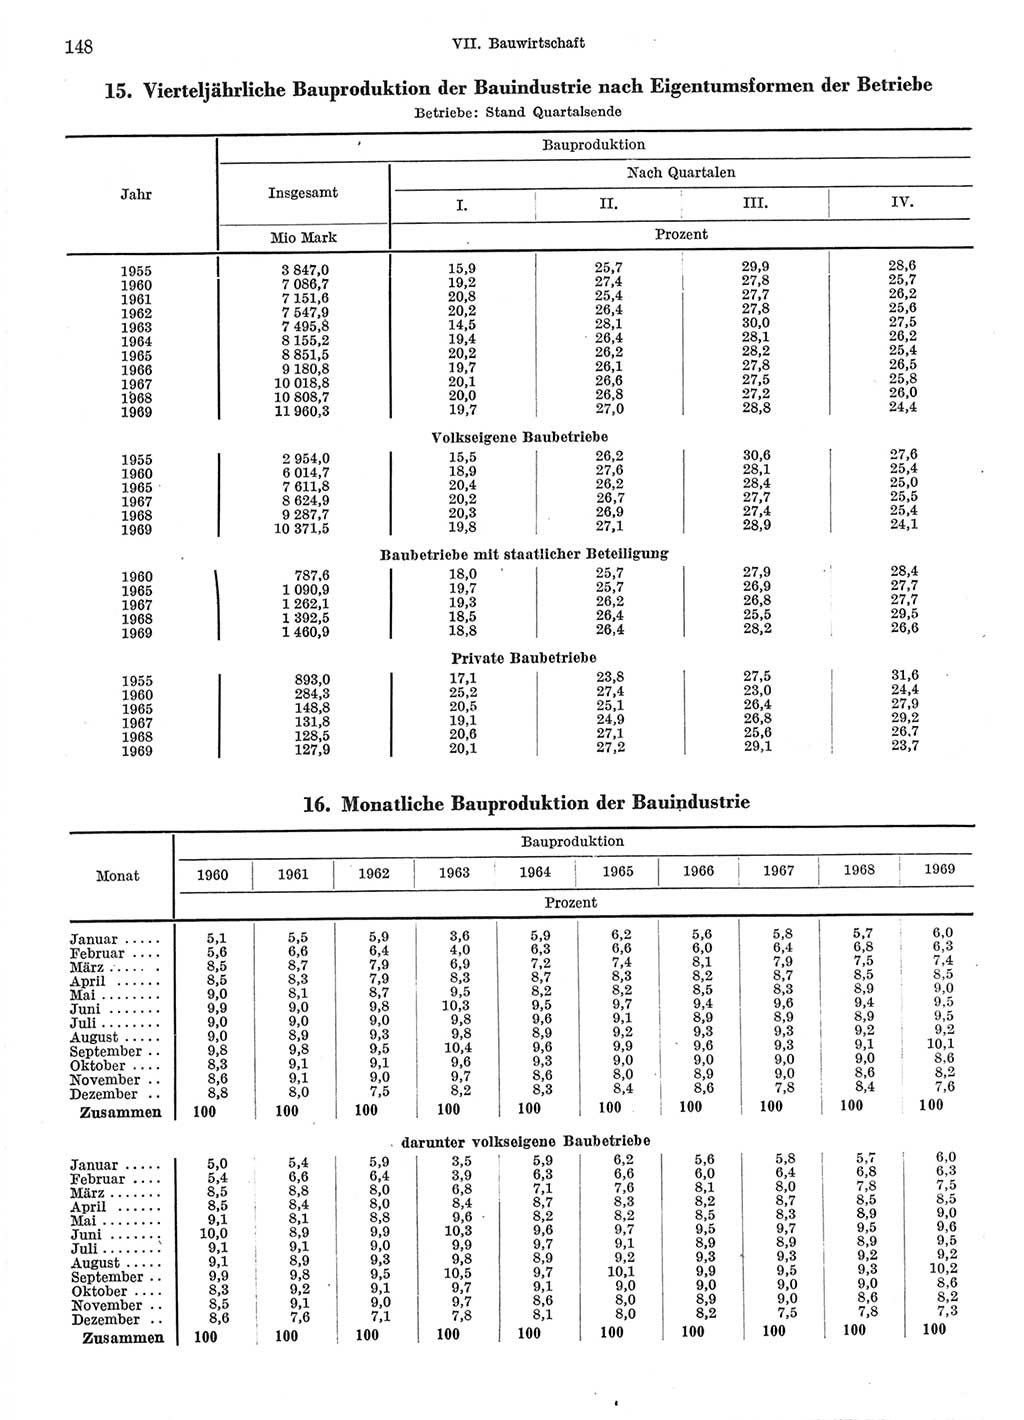 Statistisches Jahrbuch der Deutschen Demokratischen Republik (DDR) 1970, Seite 148 (Stat. Jb. DDR 1970, S. 148)